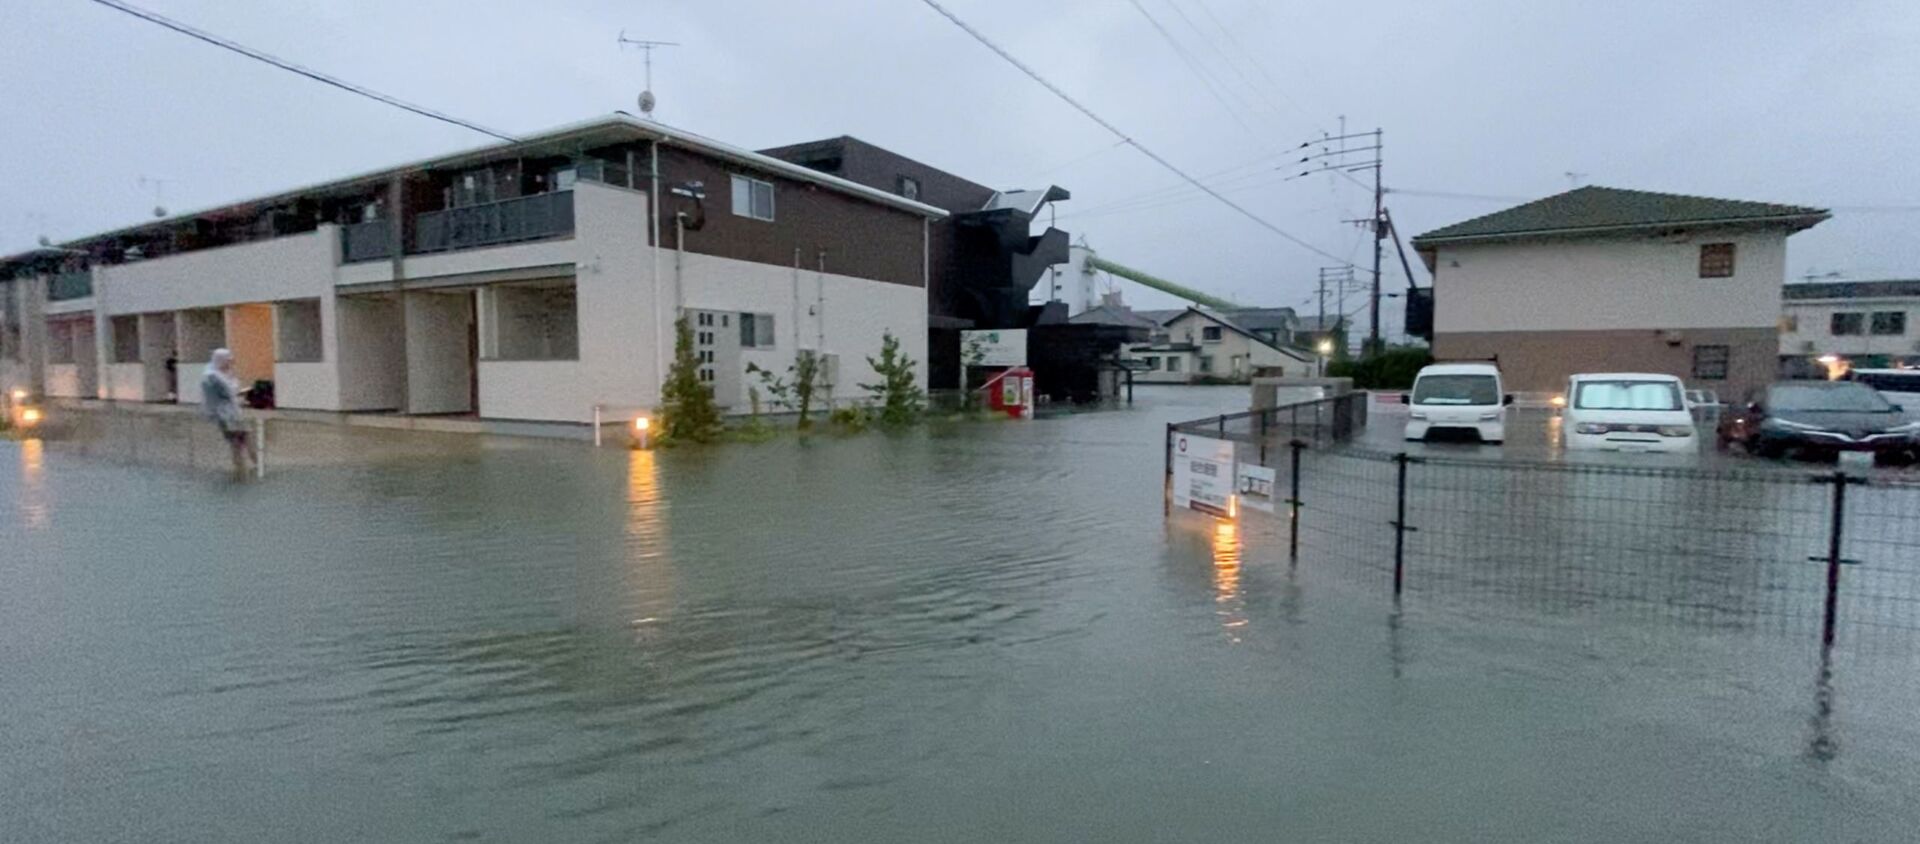 Затопленная улица во время сильного дождя в Куруме, префектура Фукуока (14 августа 2021). Япония - Sputnik Արմենիա, 1920, 14.08.2021